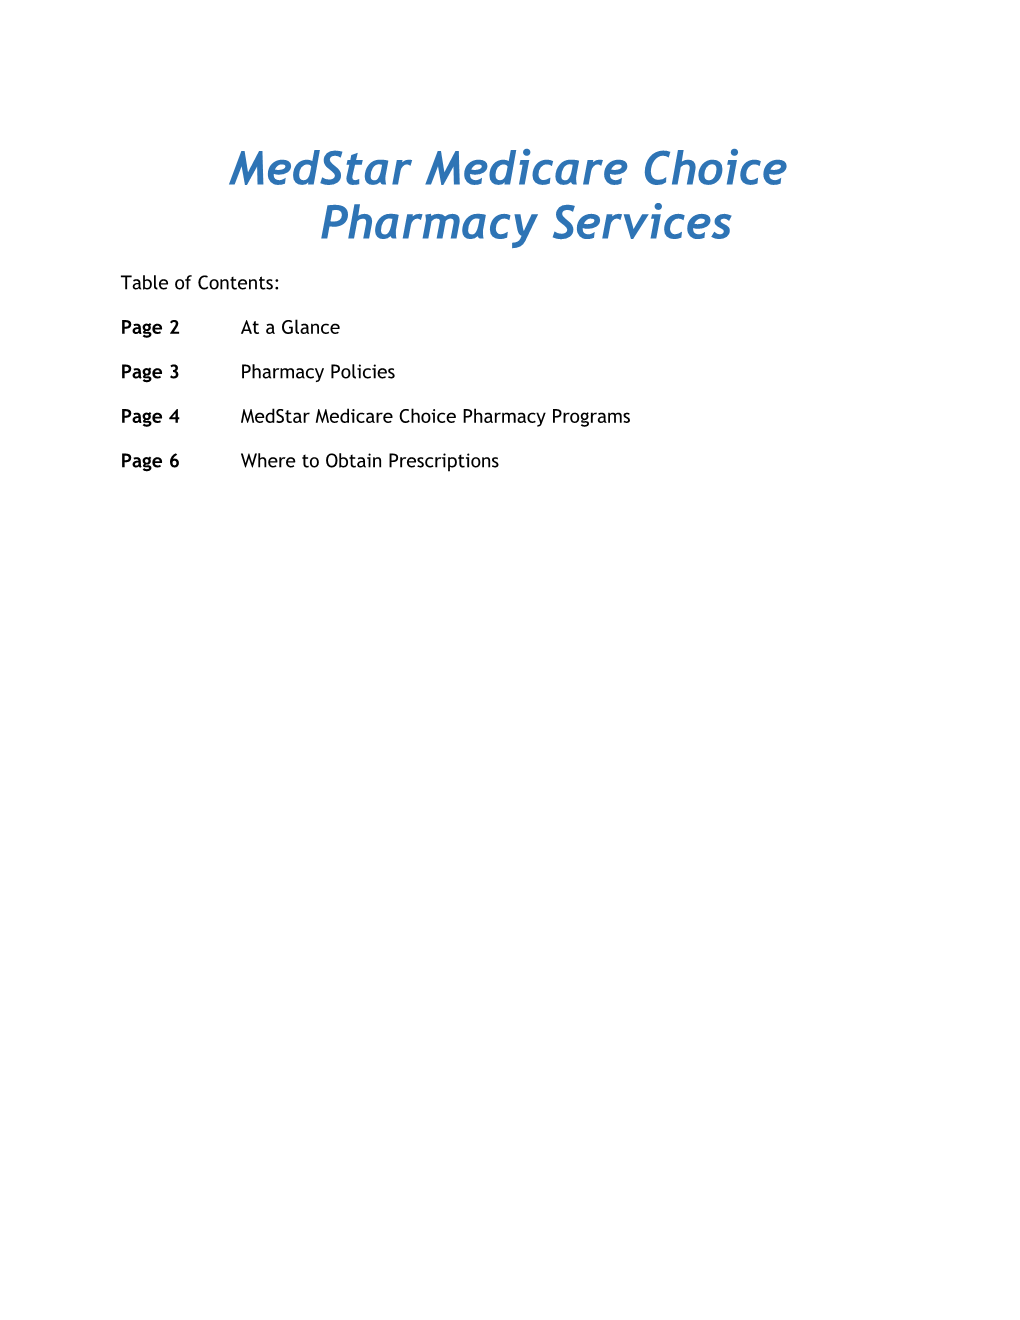 Medstar Medicare Choice Pharmacy Services